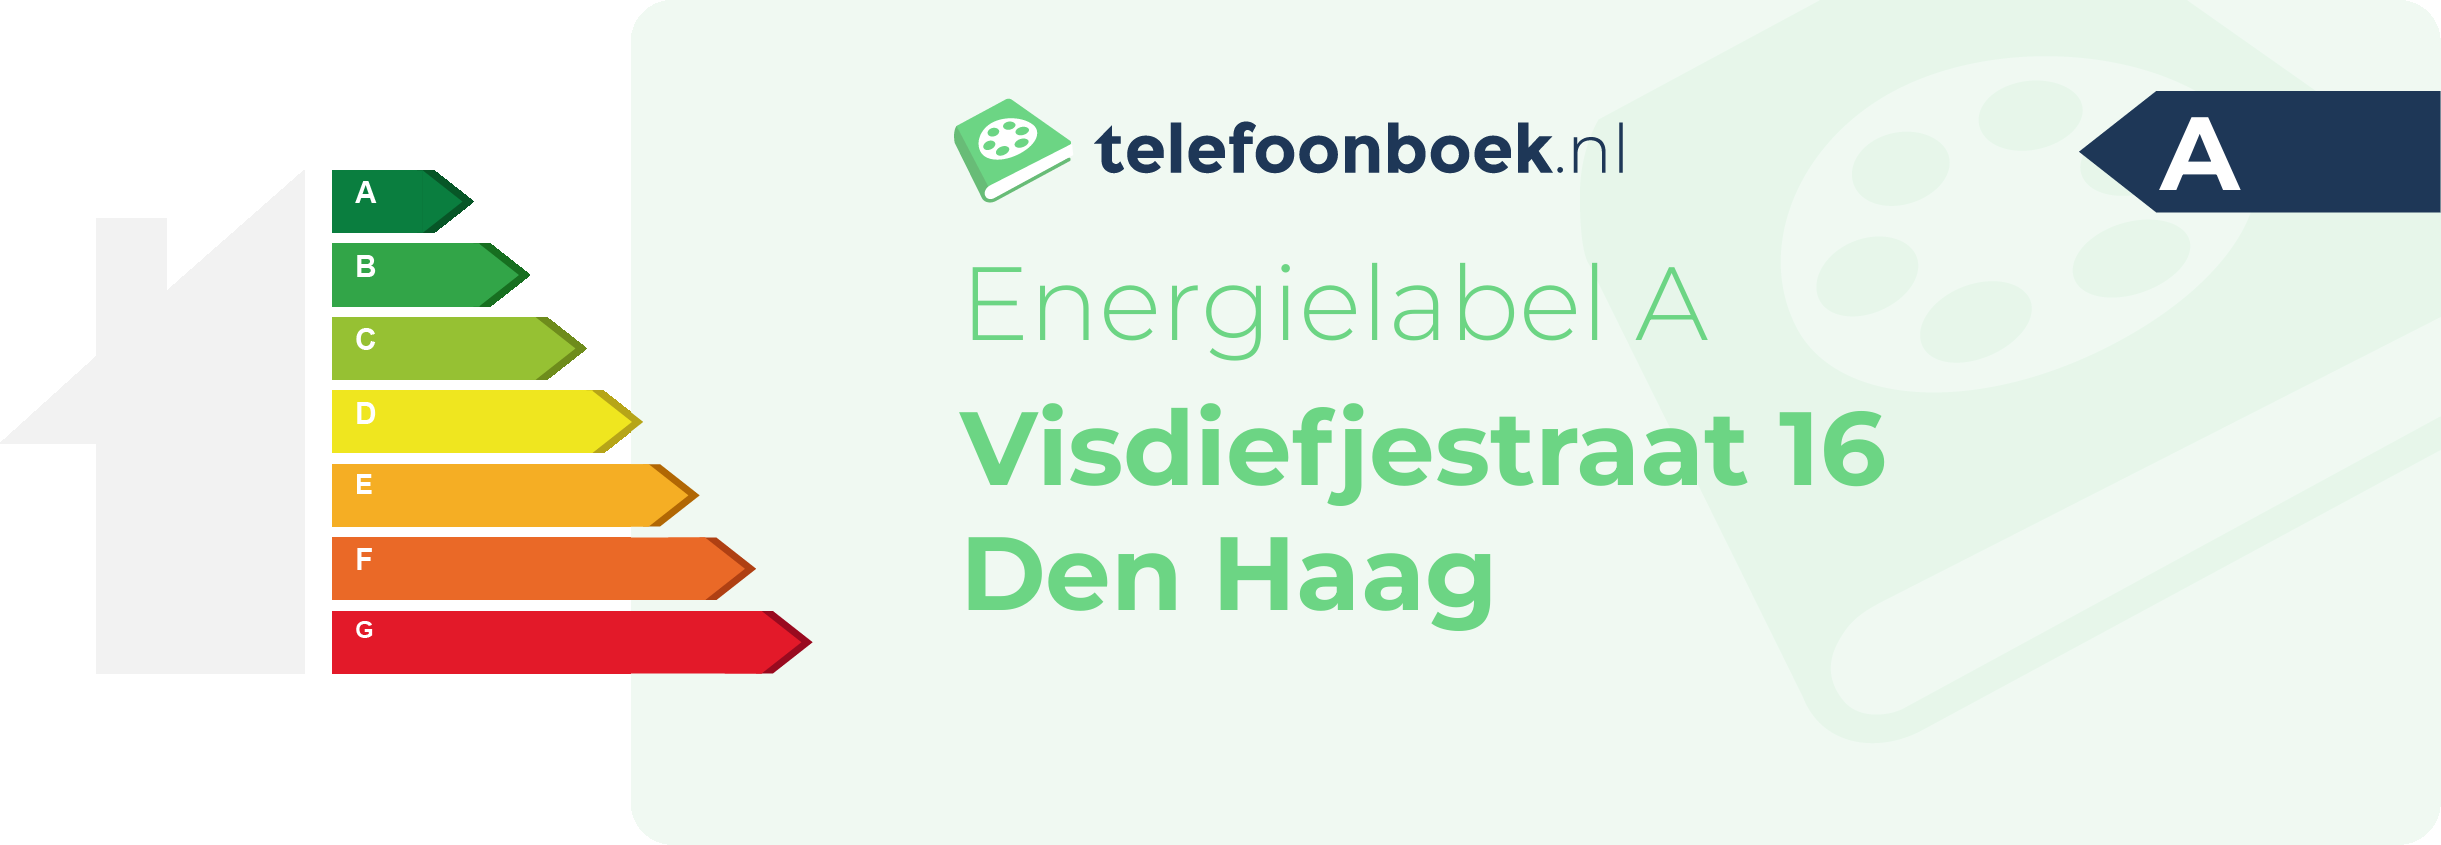 Energielabel Visdiefjestraat 16 Den Haag